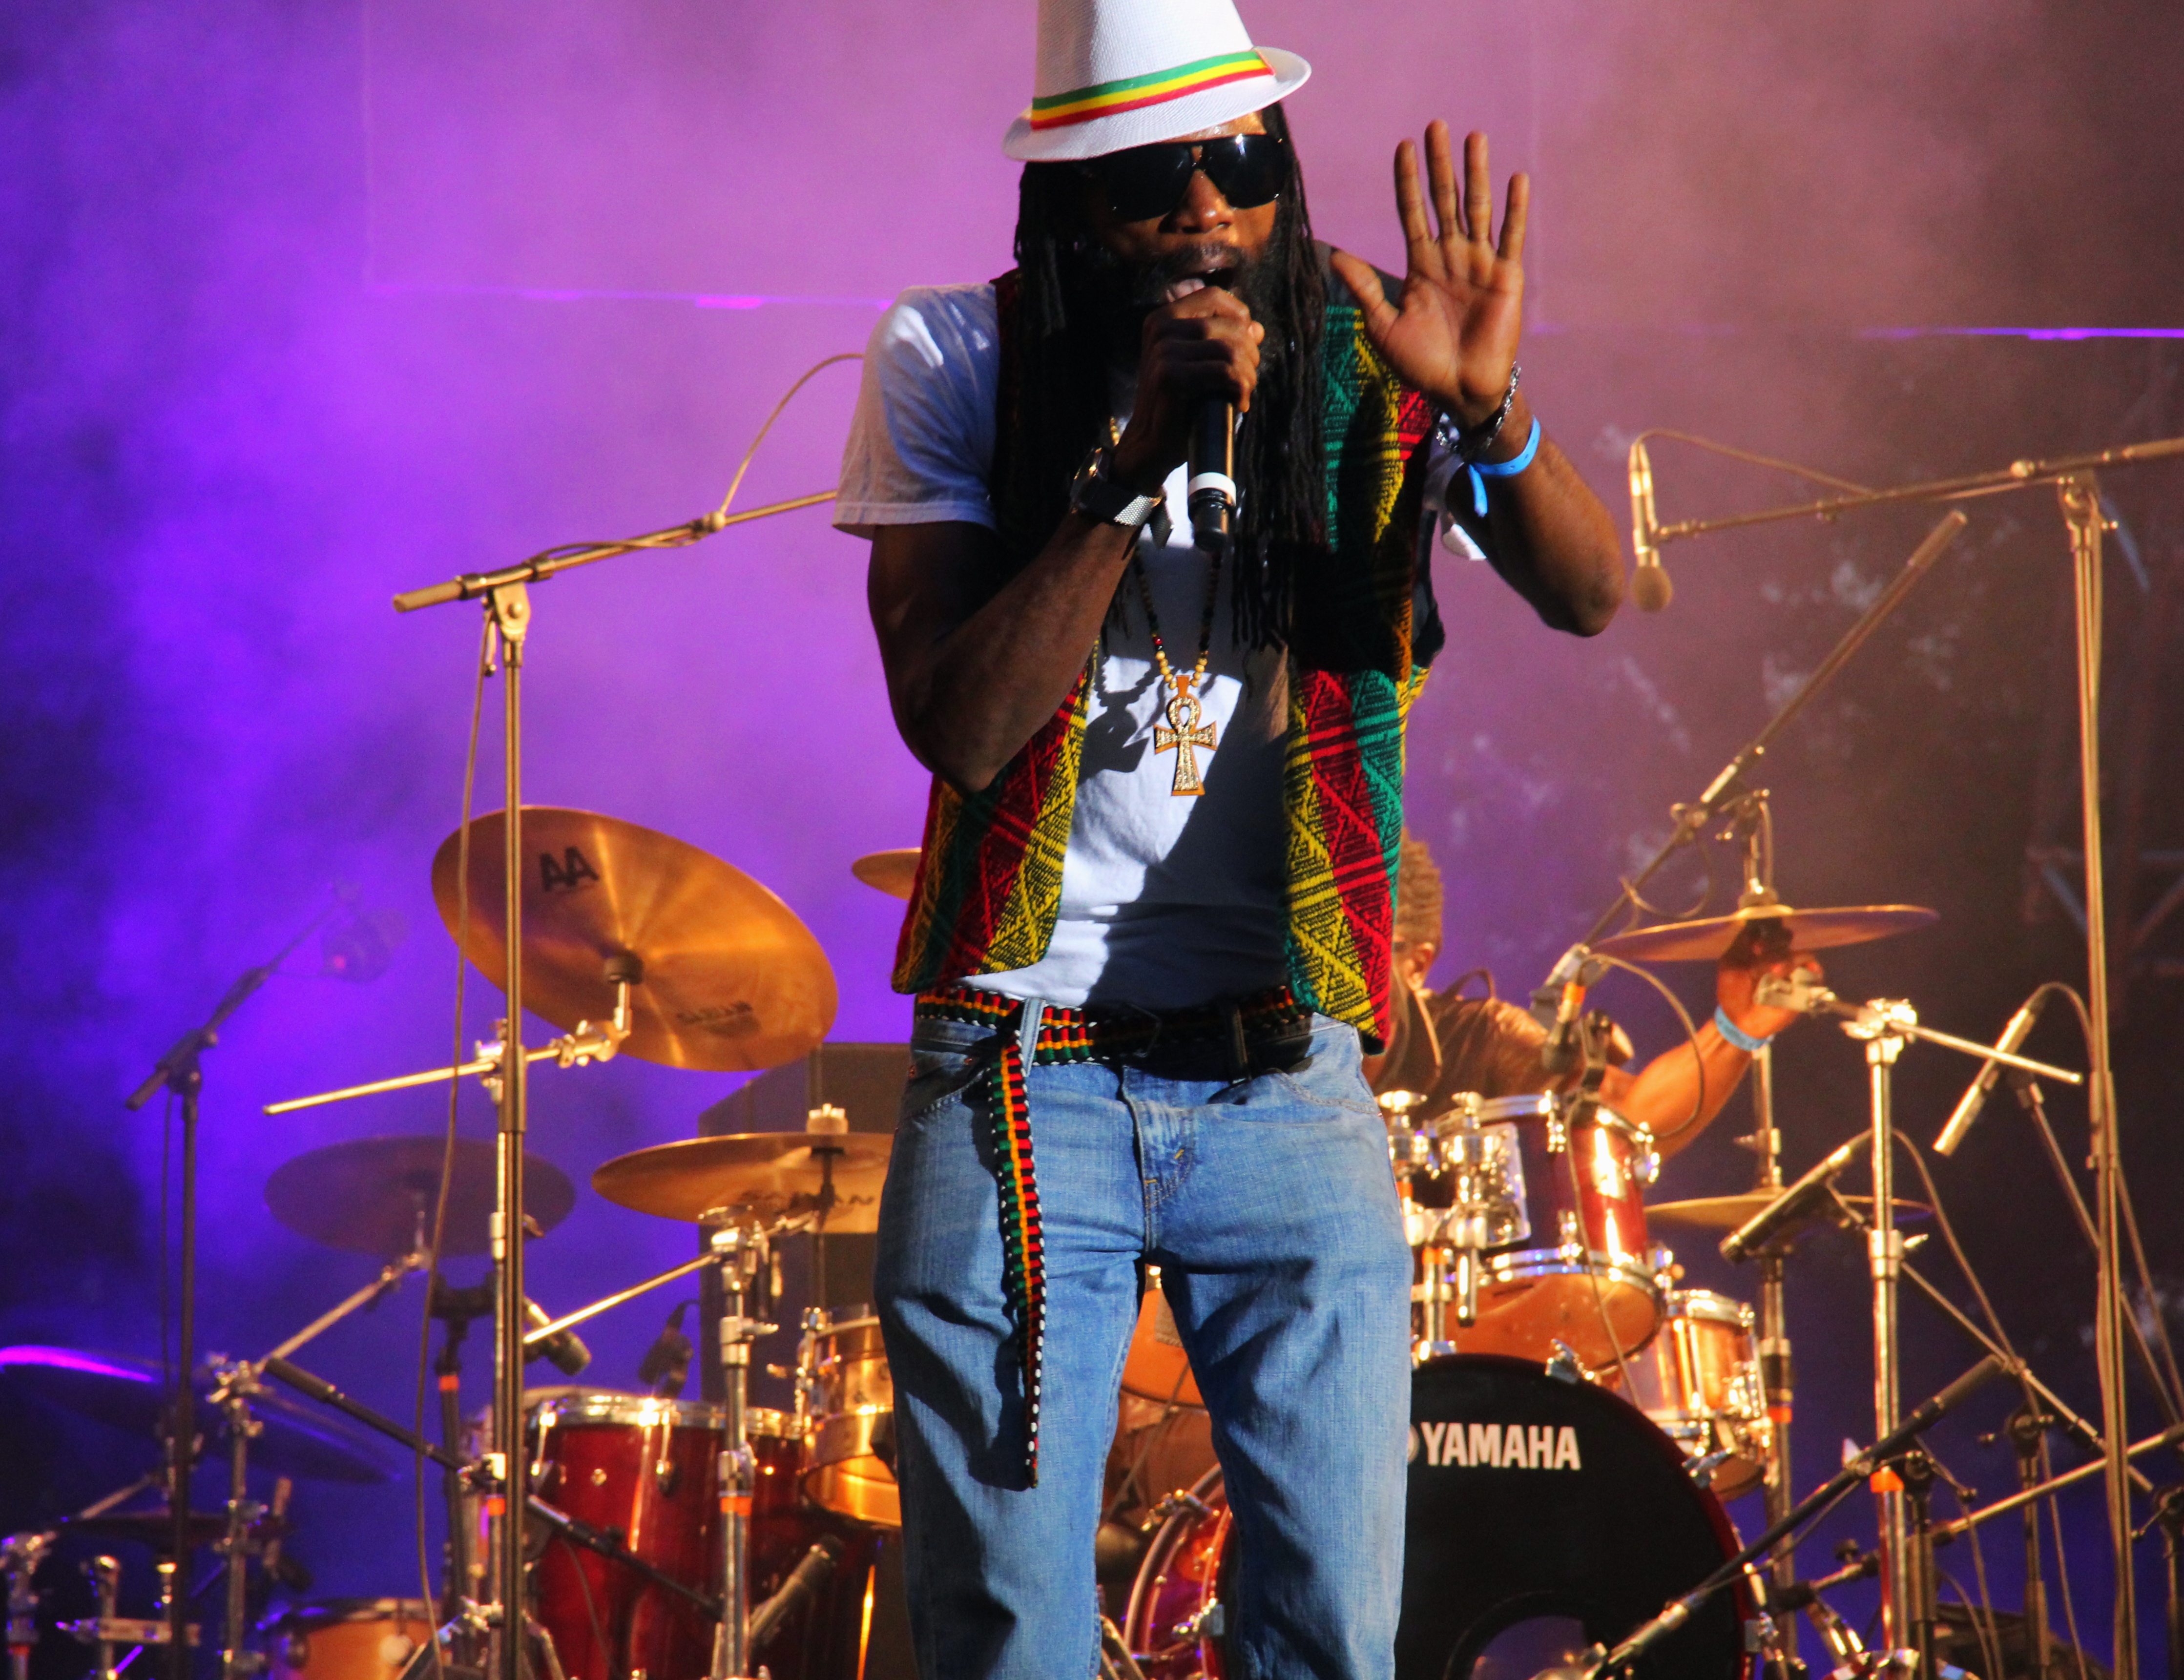 Datei:03- dubtonic kru, live garance reggae festival 2014 - fred reggaelover perry.jpg